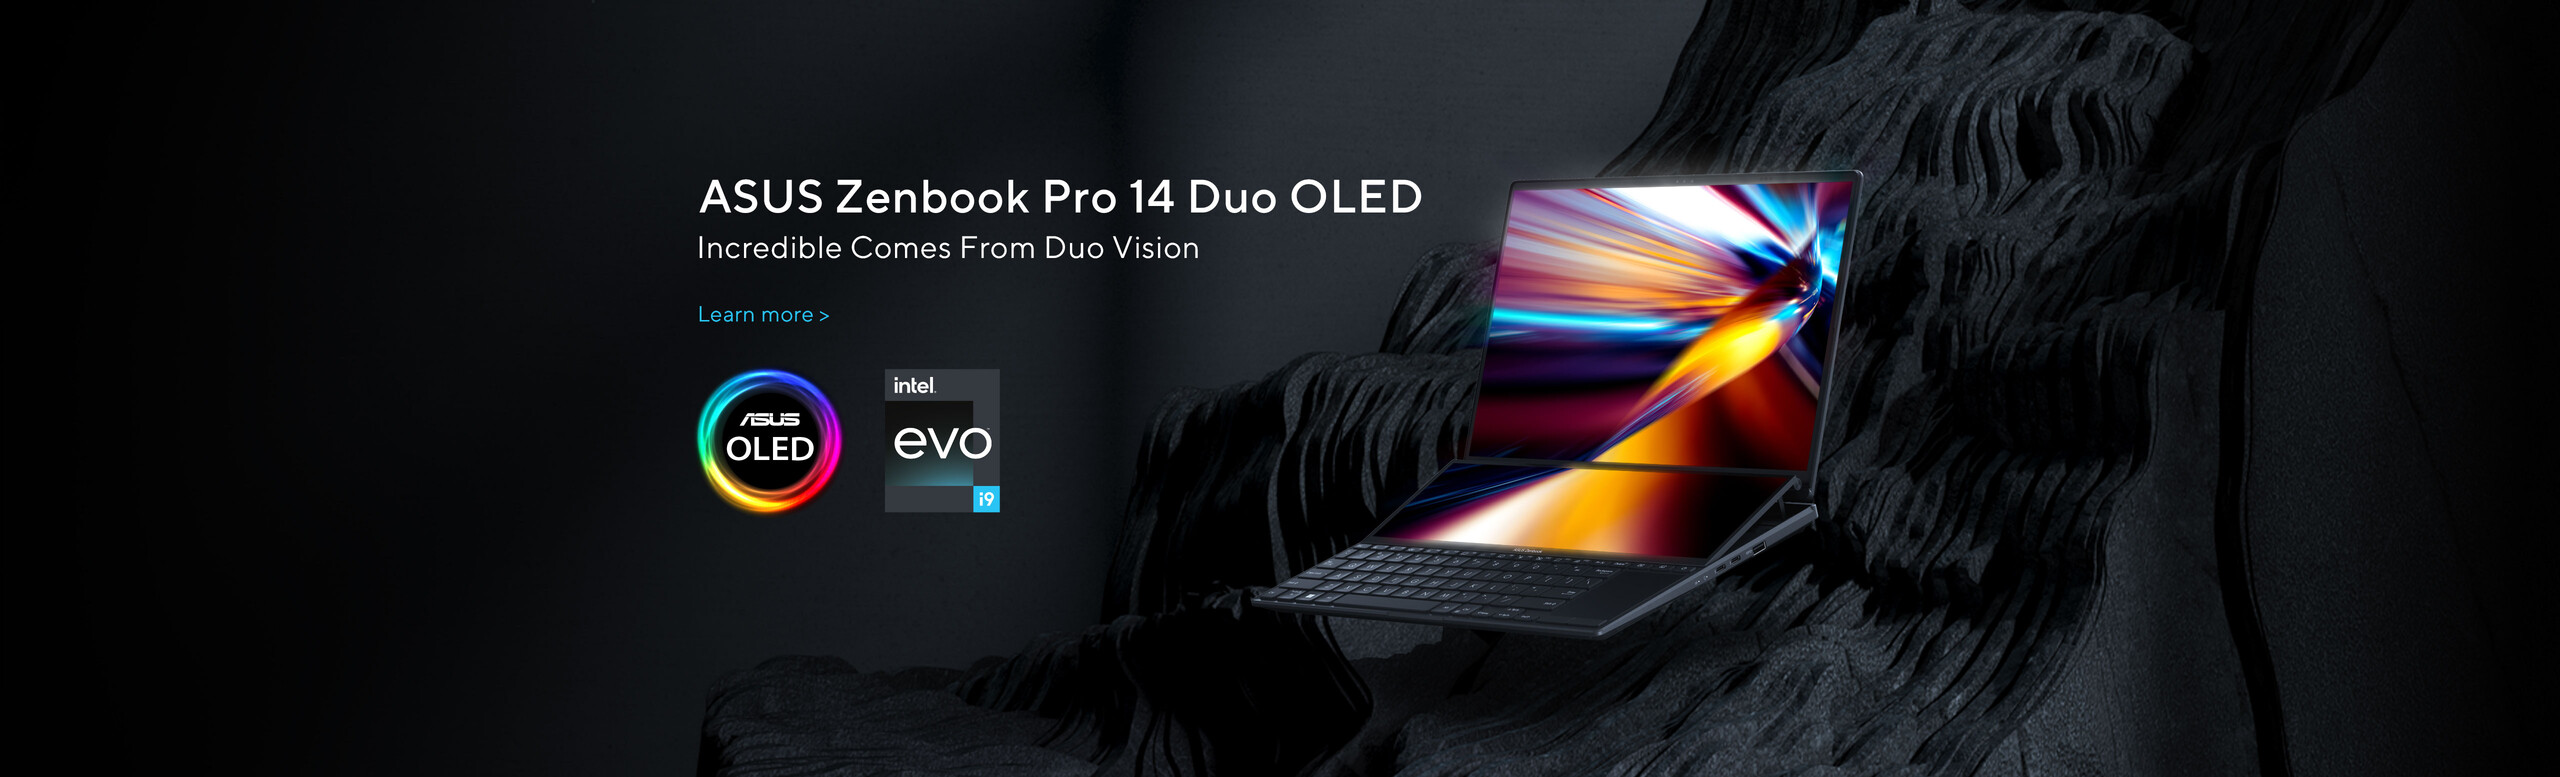 ASUS ZenBook Pro 14 Duo